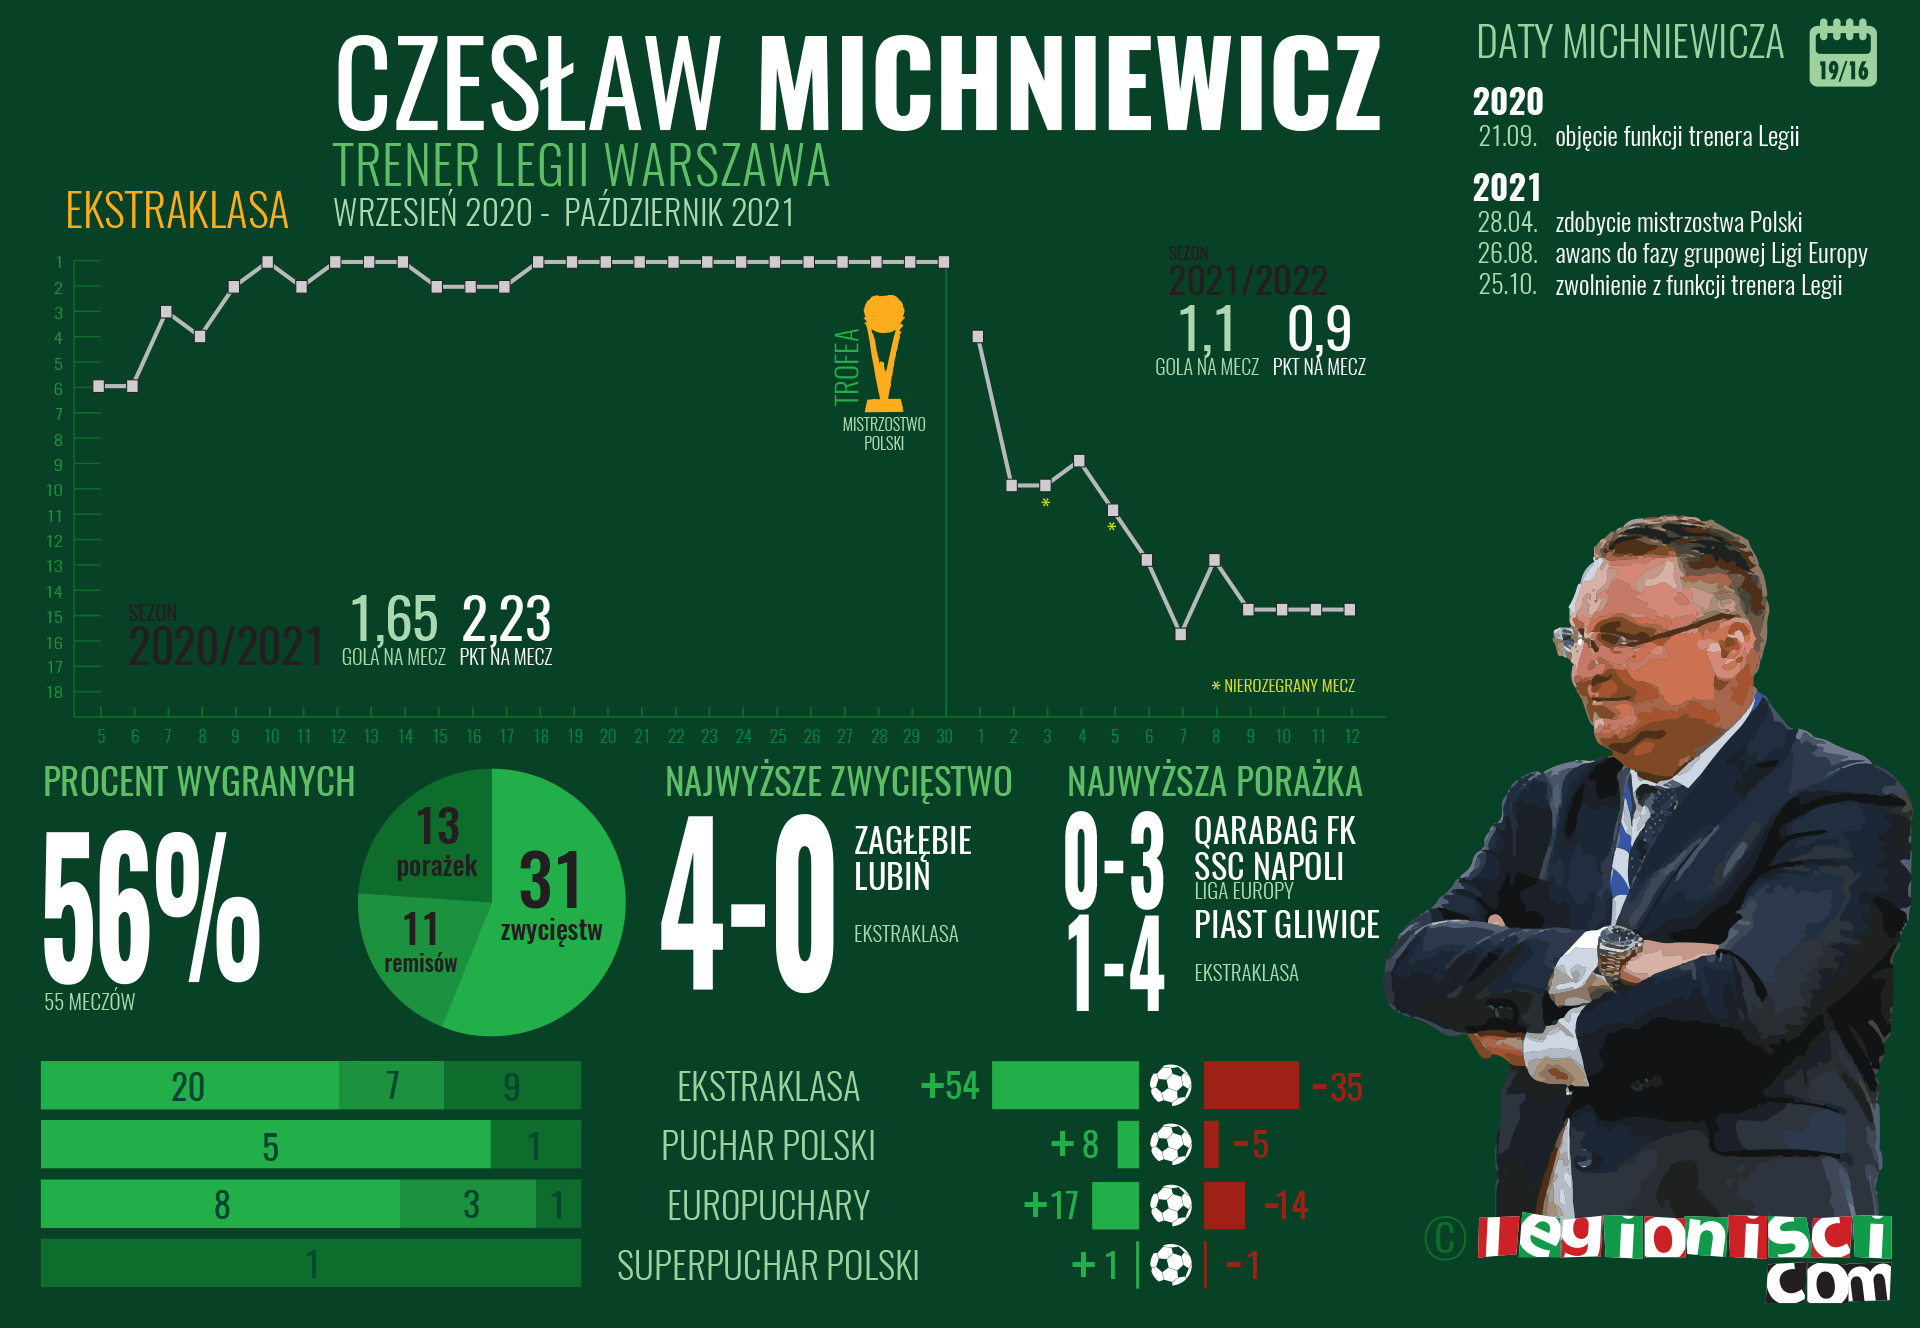 Czesław Michniewicz jako trener Legii Warszawa / infografika Legionisci.com